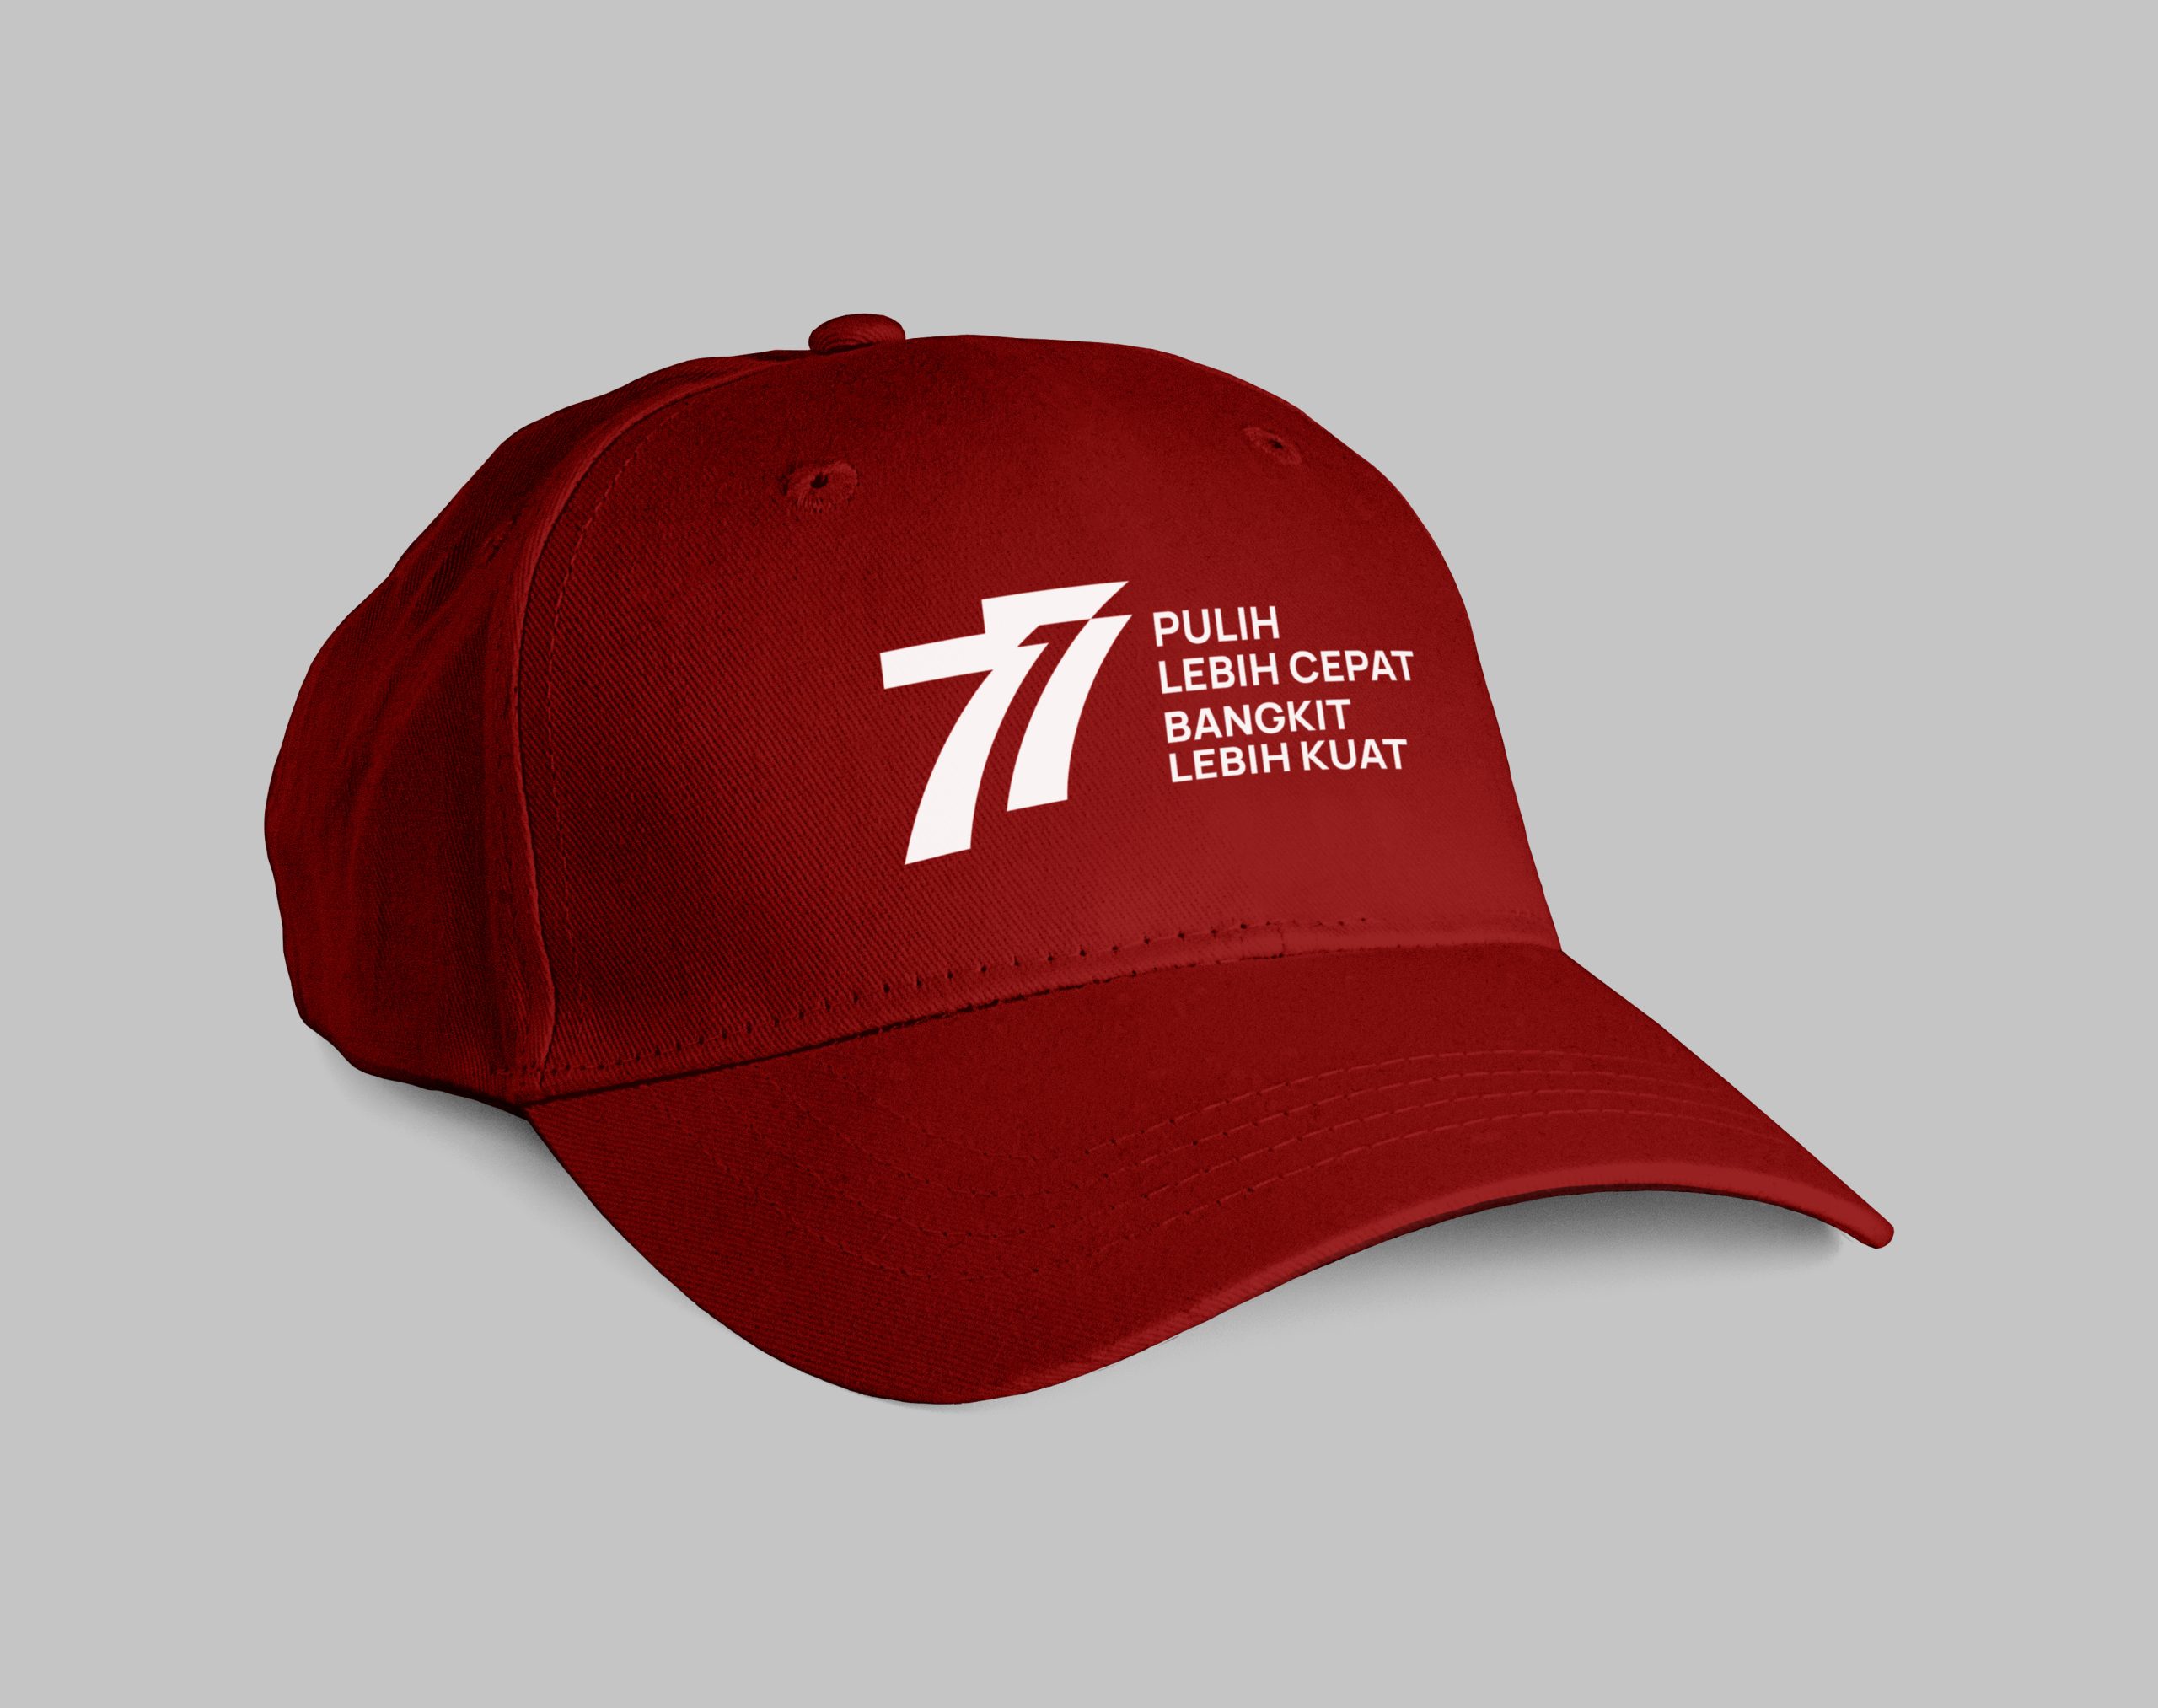 Topi dengan logo HUT RI 77